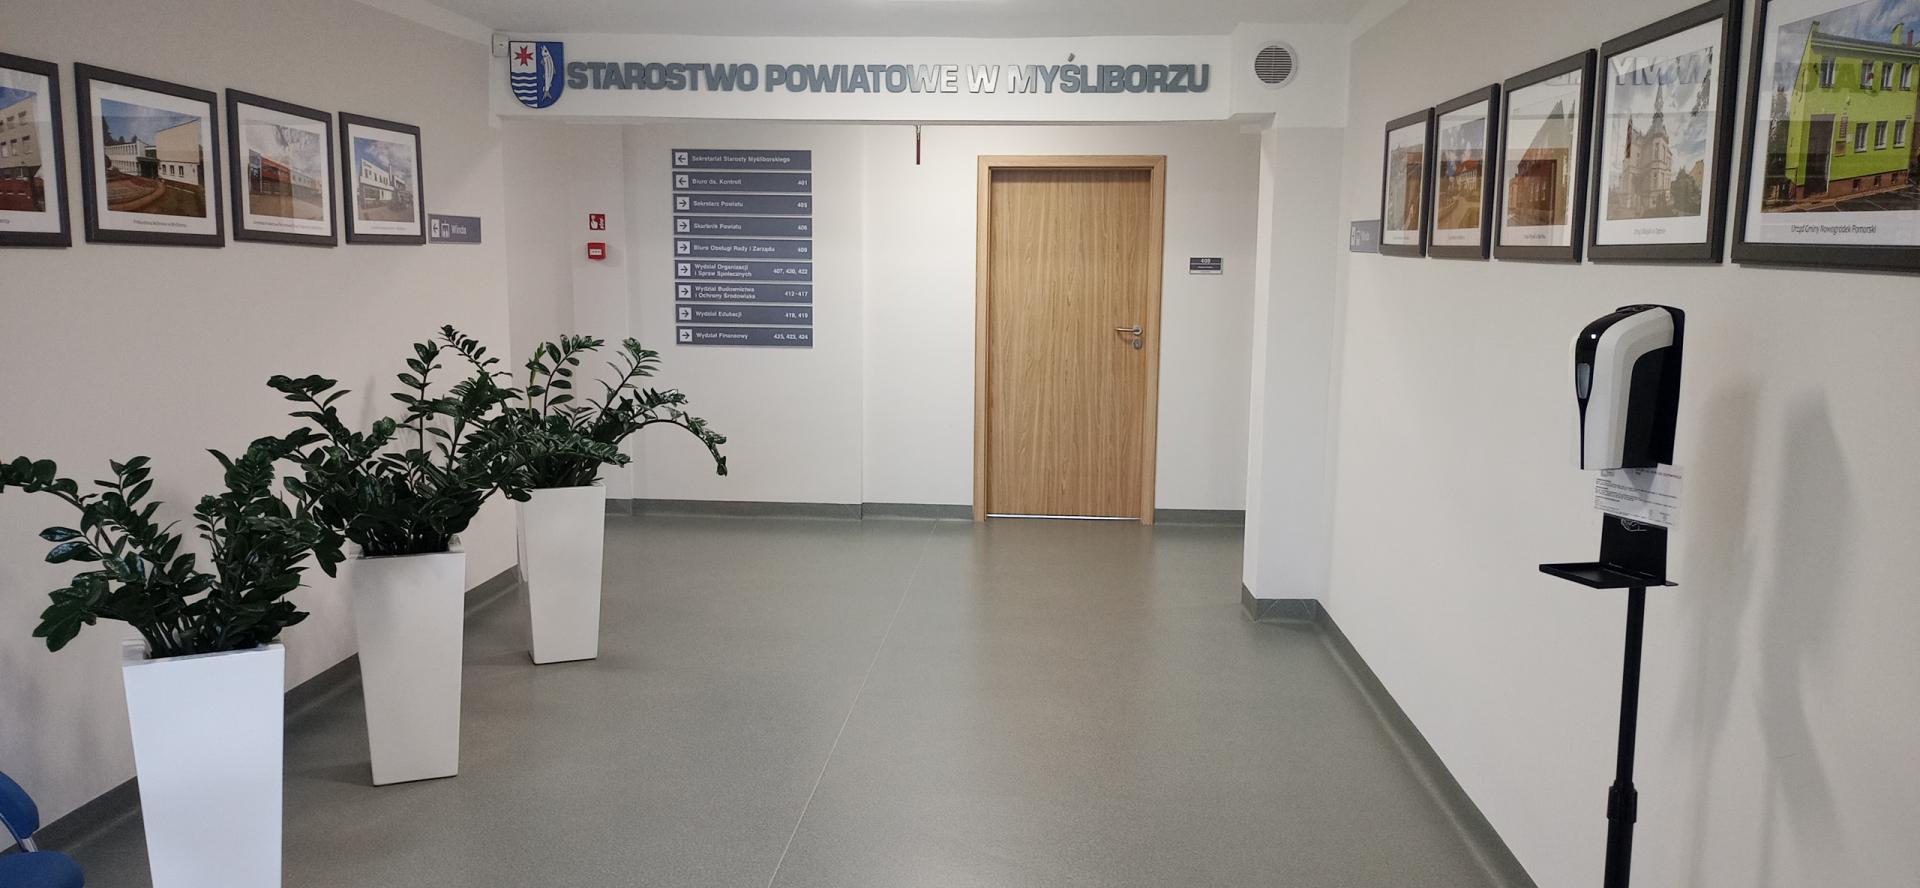 korytarz na IV piętrze budynku Starostwa Powiatowego w Myśliborzu, informacje na temat rozkłau biur urzędu